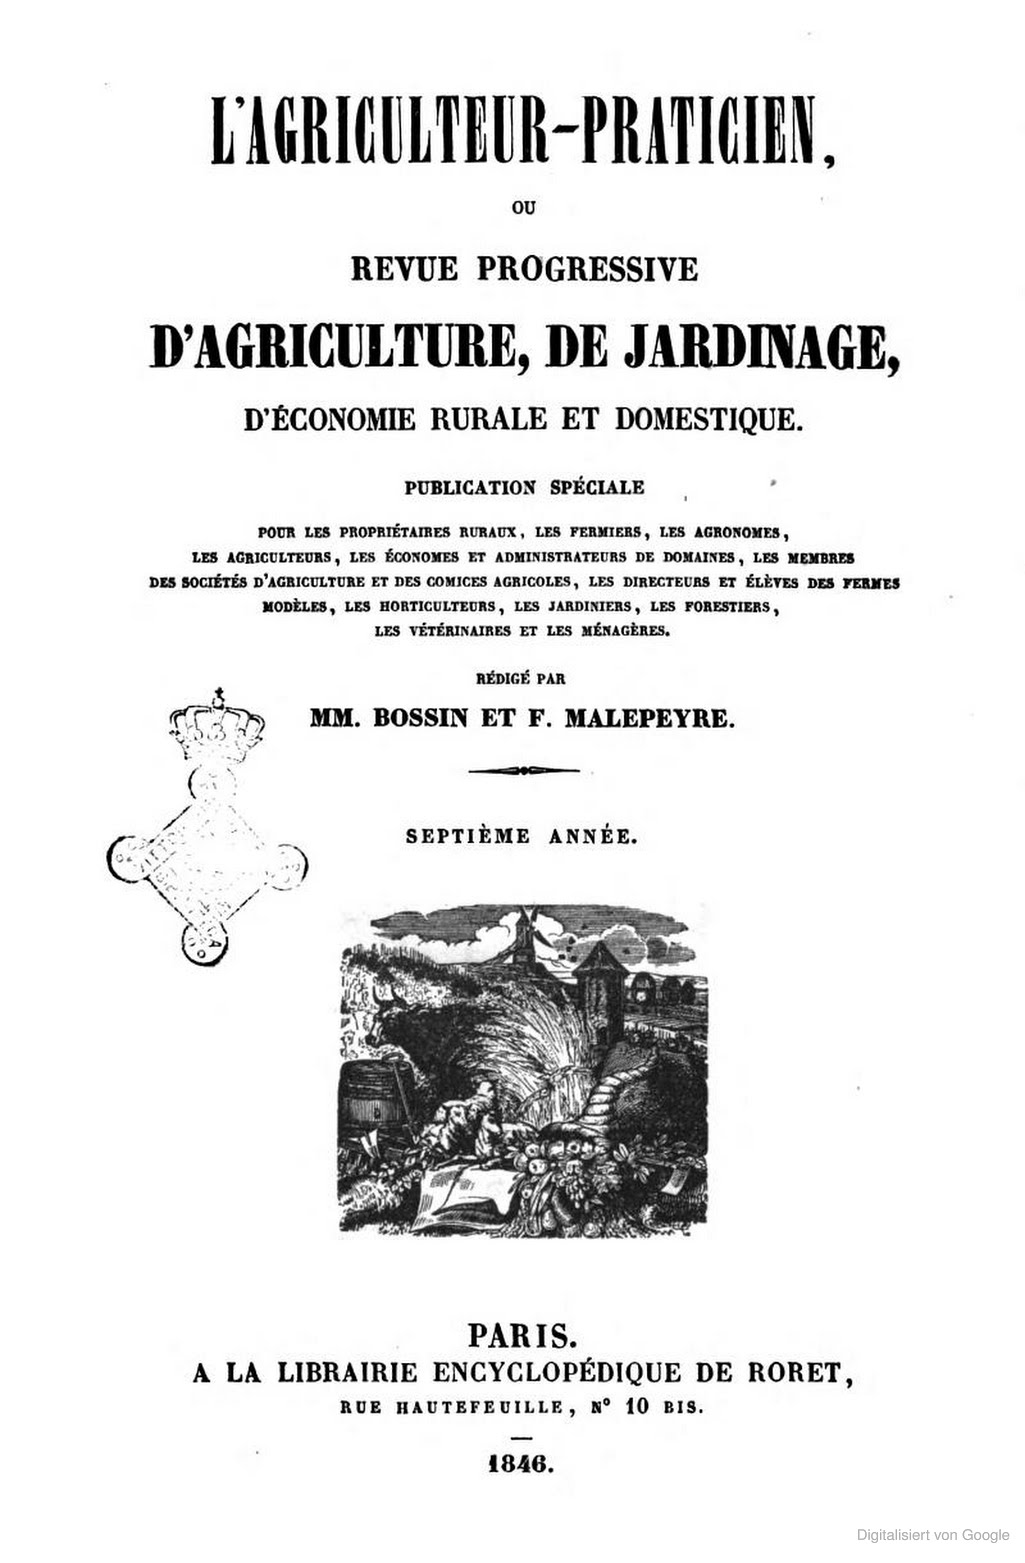 titel agri 1846